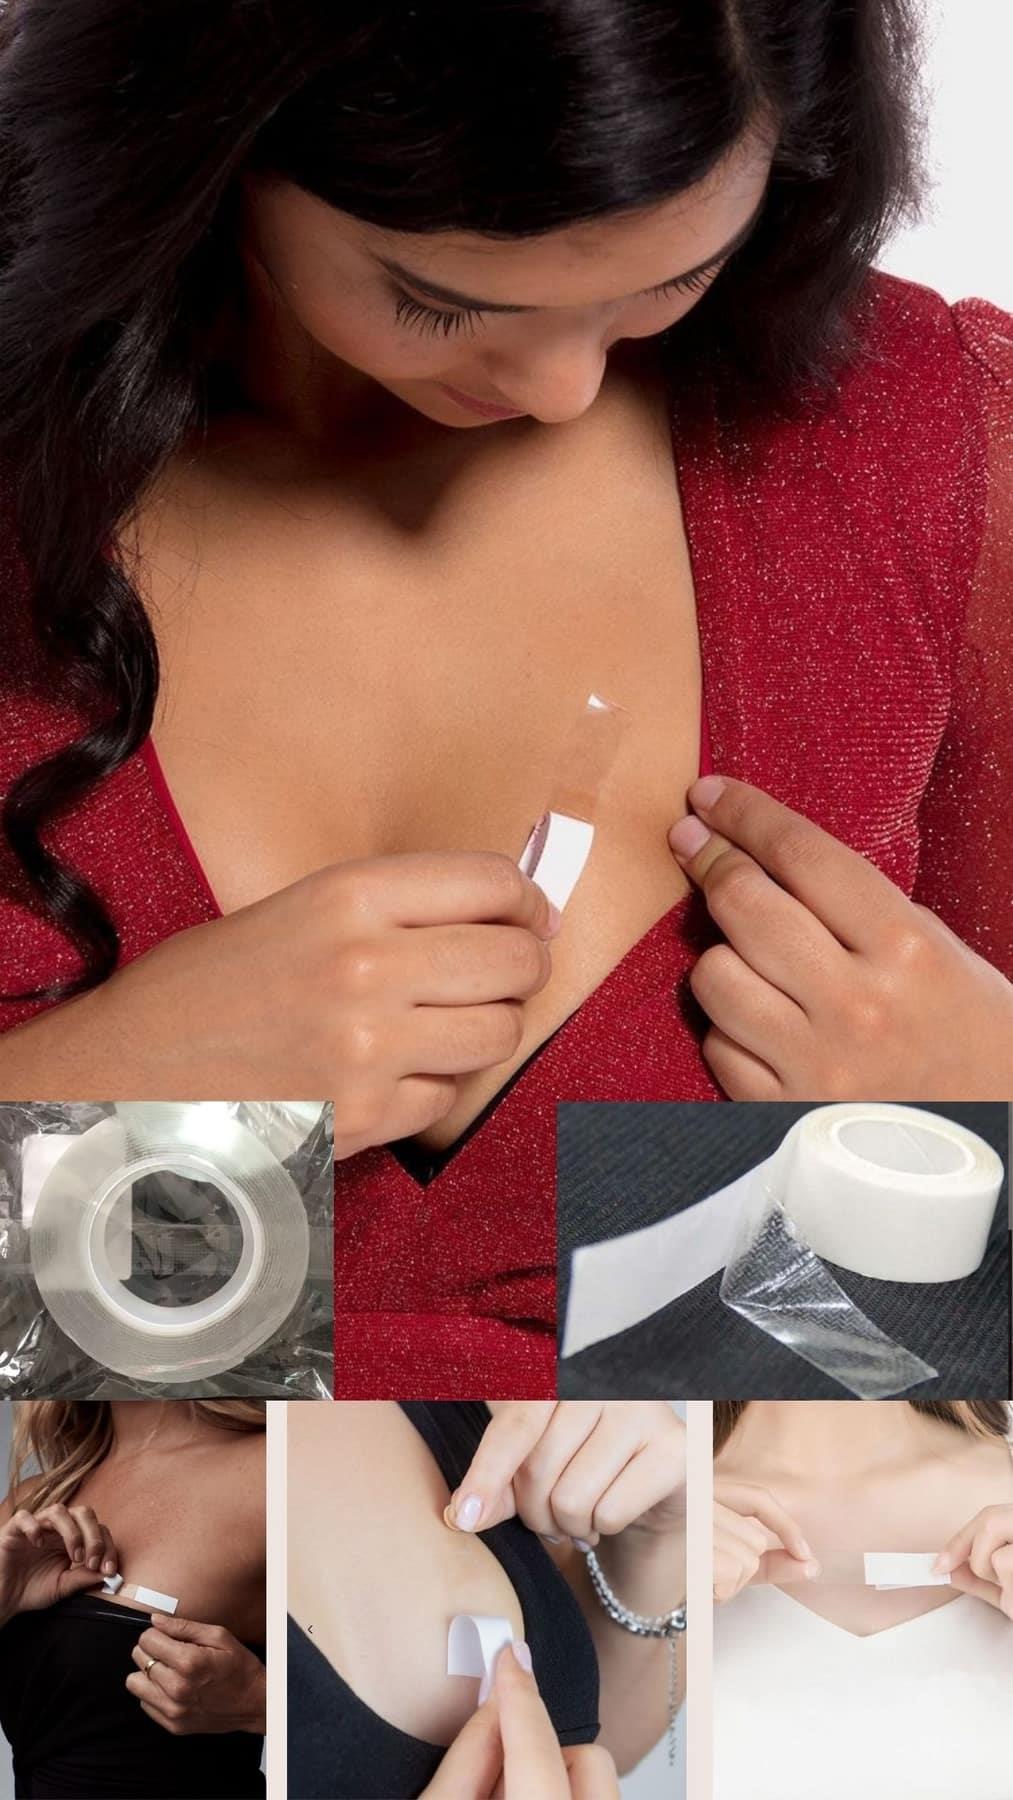 Brust aufrecht Kleid unten Ausschnitt Produkt Zubehör transparentes Band Hm85227